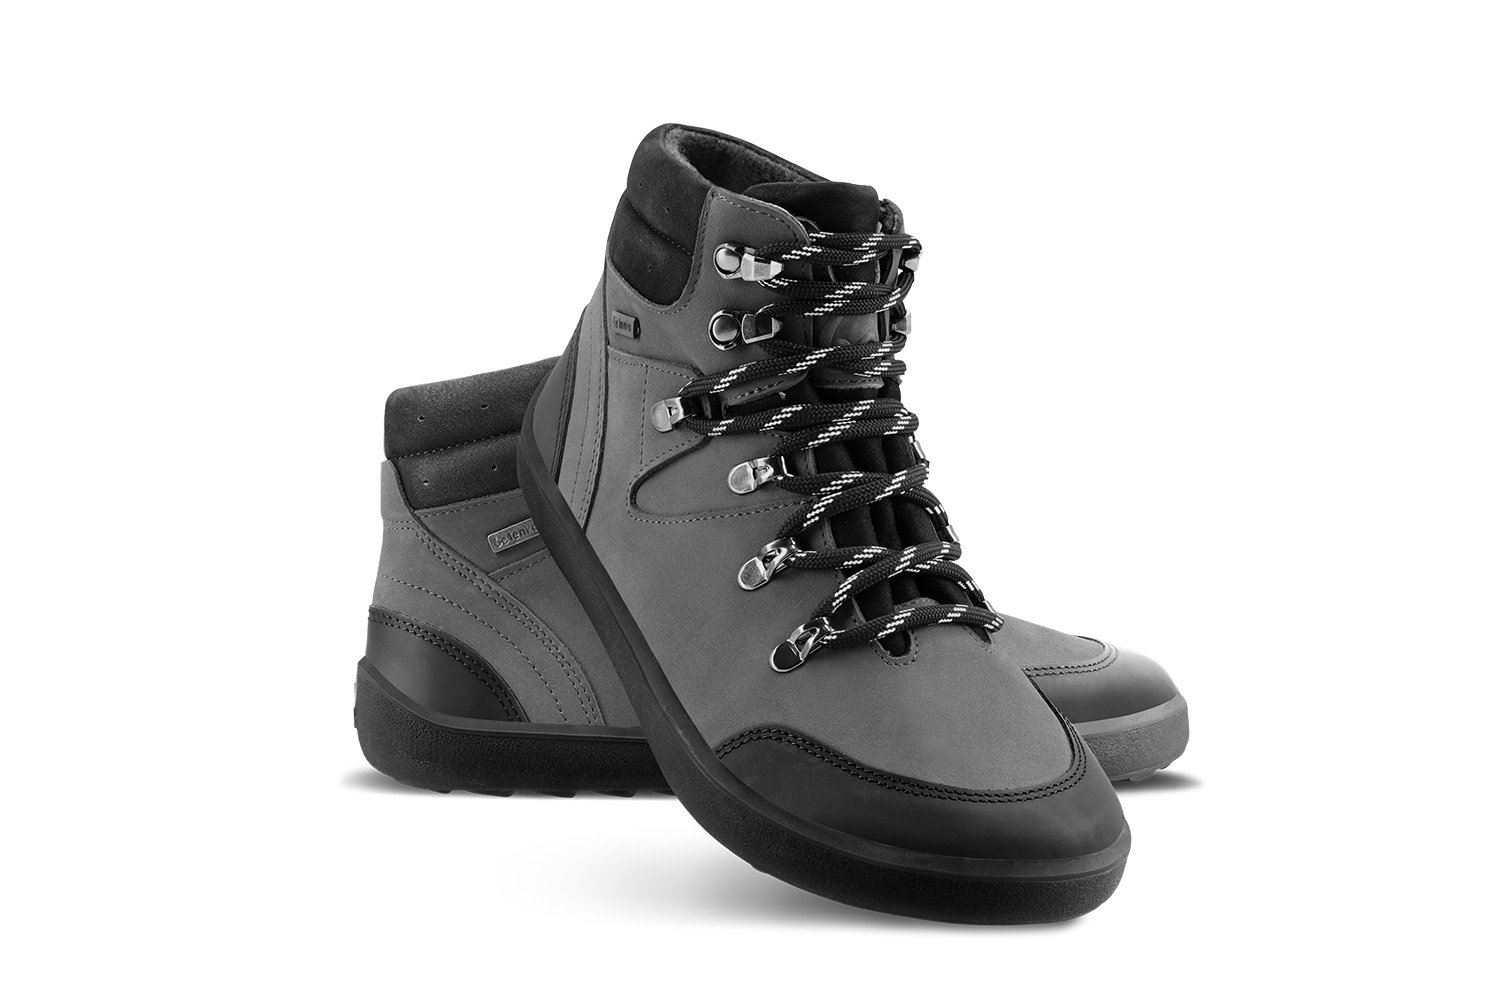 Barefoot Shoes Be Lenka Ranger 2.0 - Grey & Black | Be Lenka